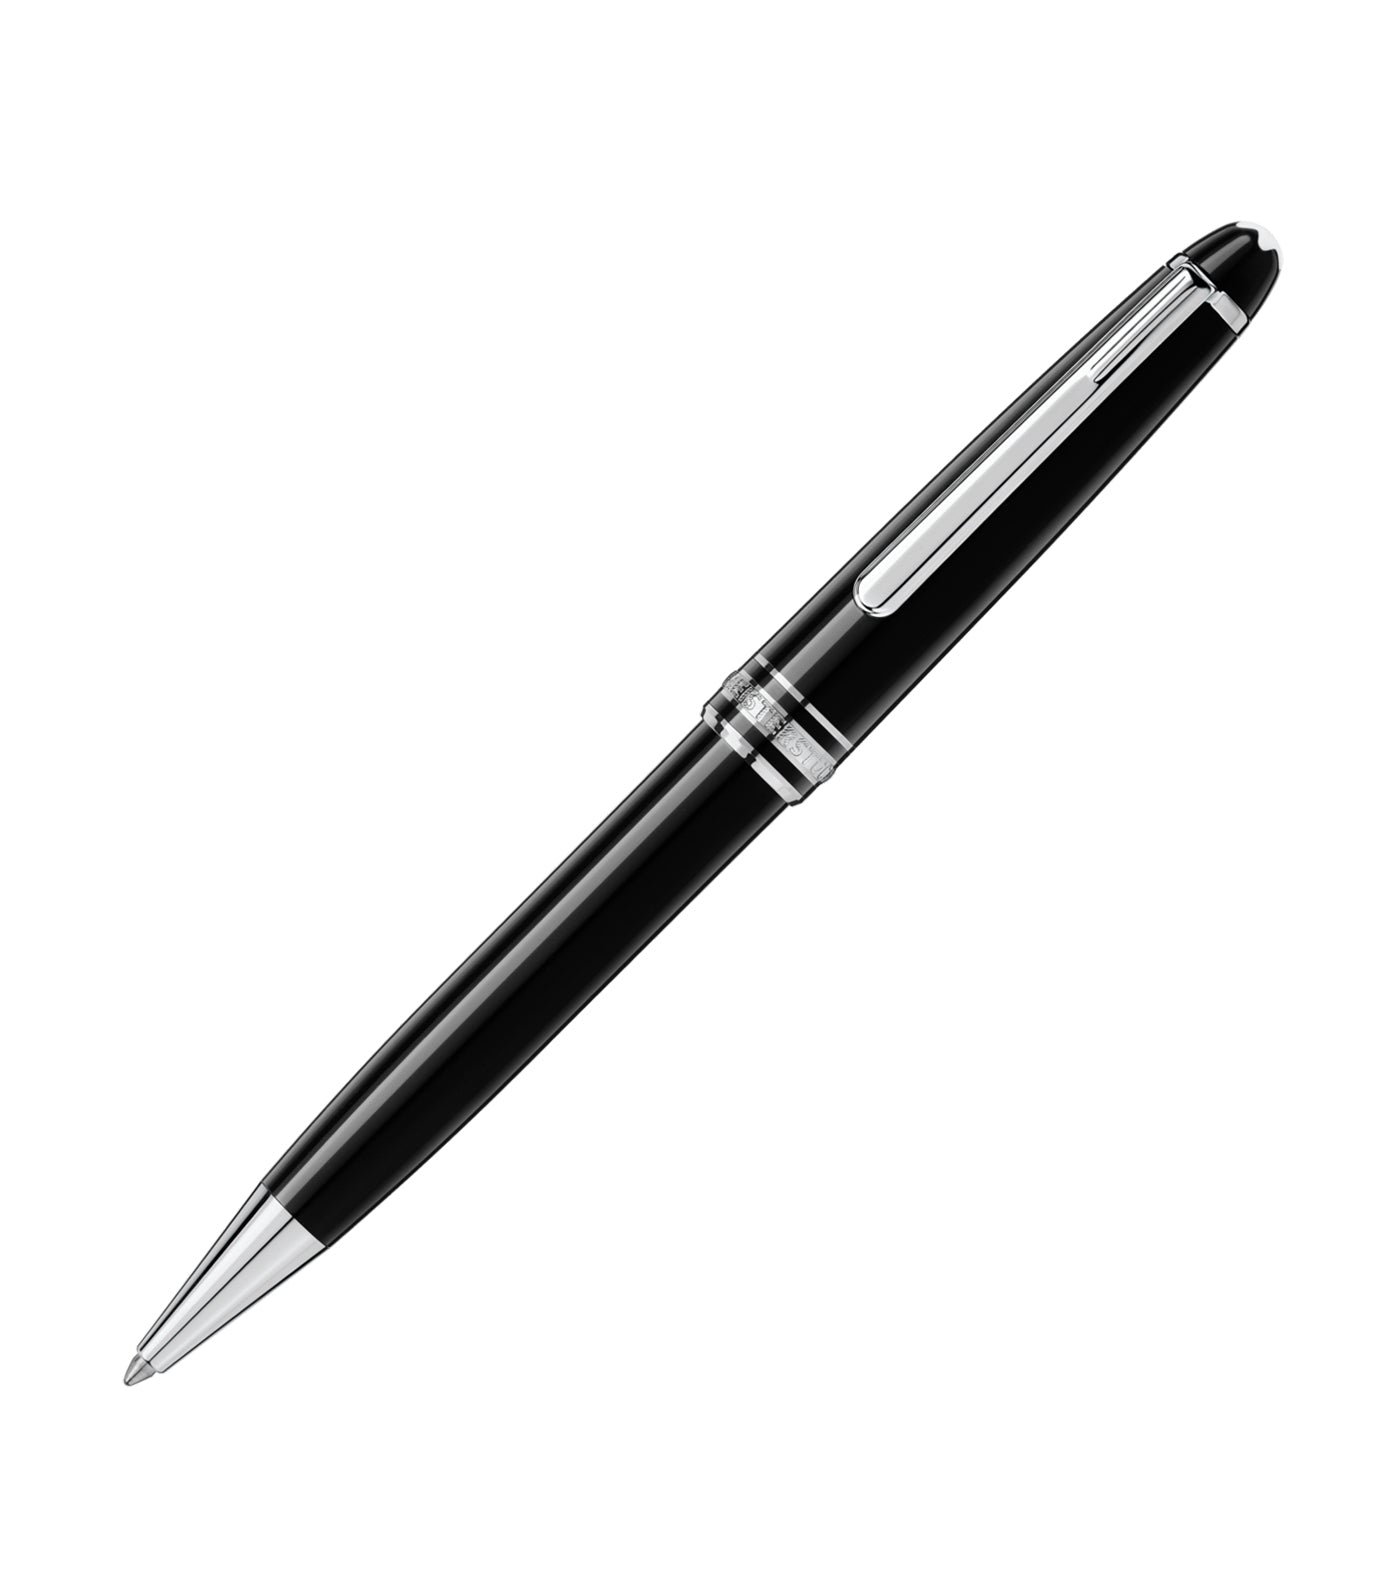 montblanc meisterstã¼ck platinum-coated classique ballpoint pen